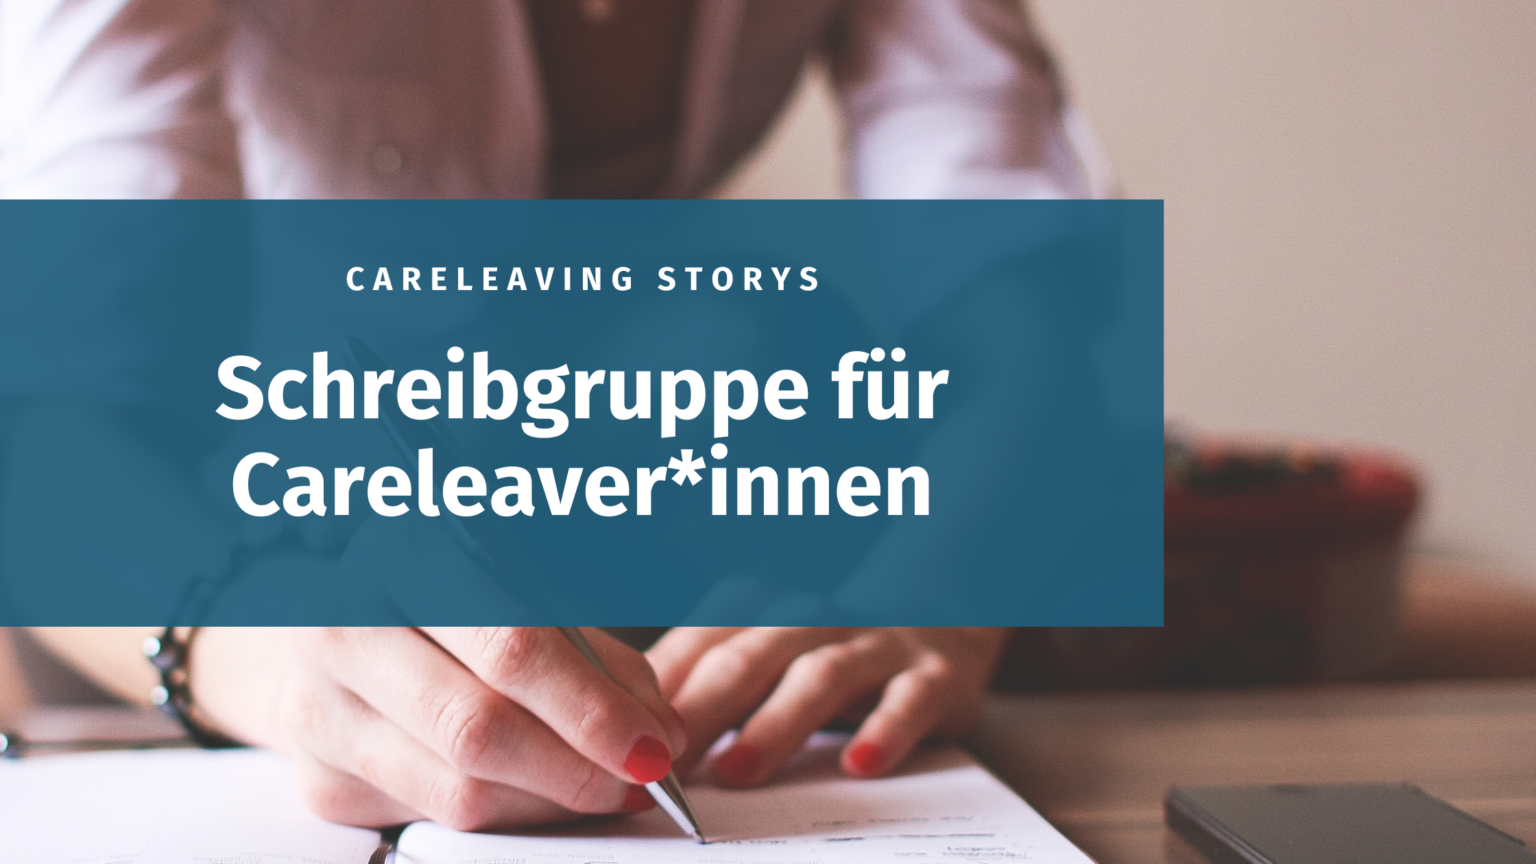 Auf einem dunkeltürkisen Banner steht der Text: Careleaving Storys Schreibgruppe für Careleaver*innen in weißer Schrift. Das Hintergrundfoto zeigt die Hände einer Person, die mit einem Stift auf einen Notizblock schreibt.